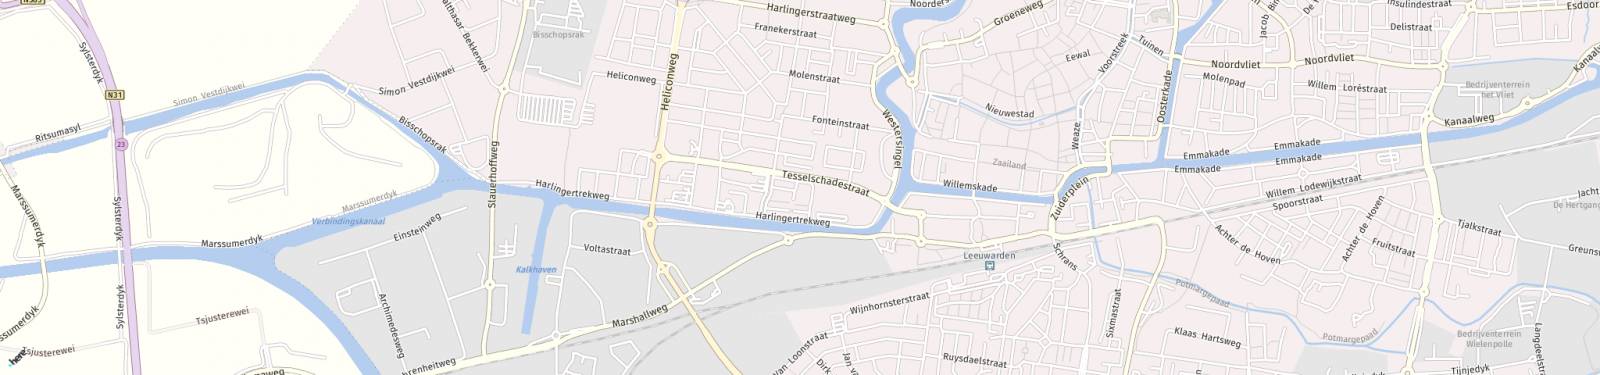 Kaart met locatie Studio Tesselschadestraat